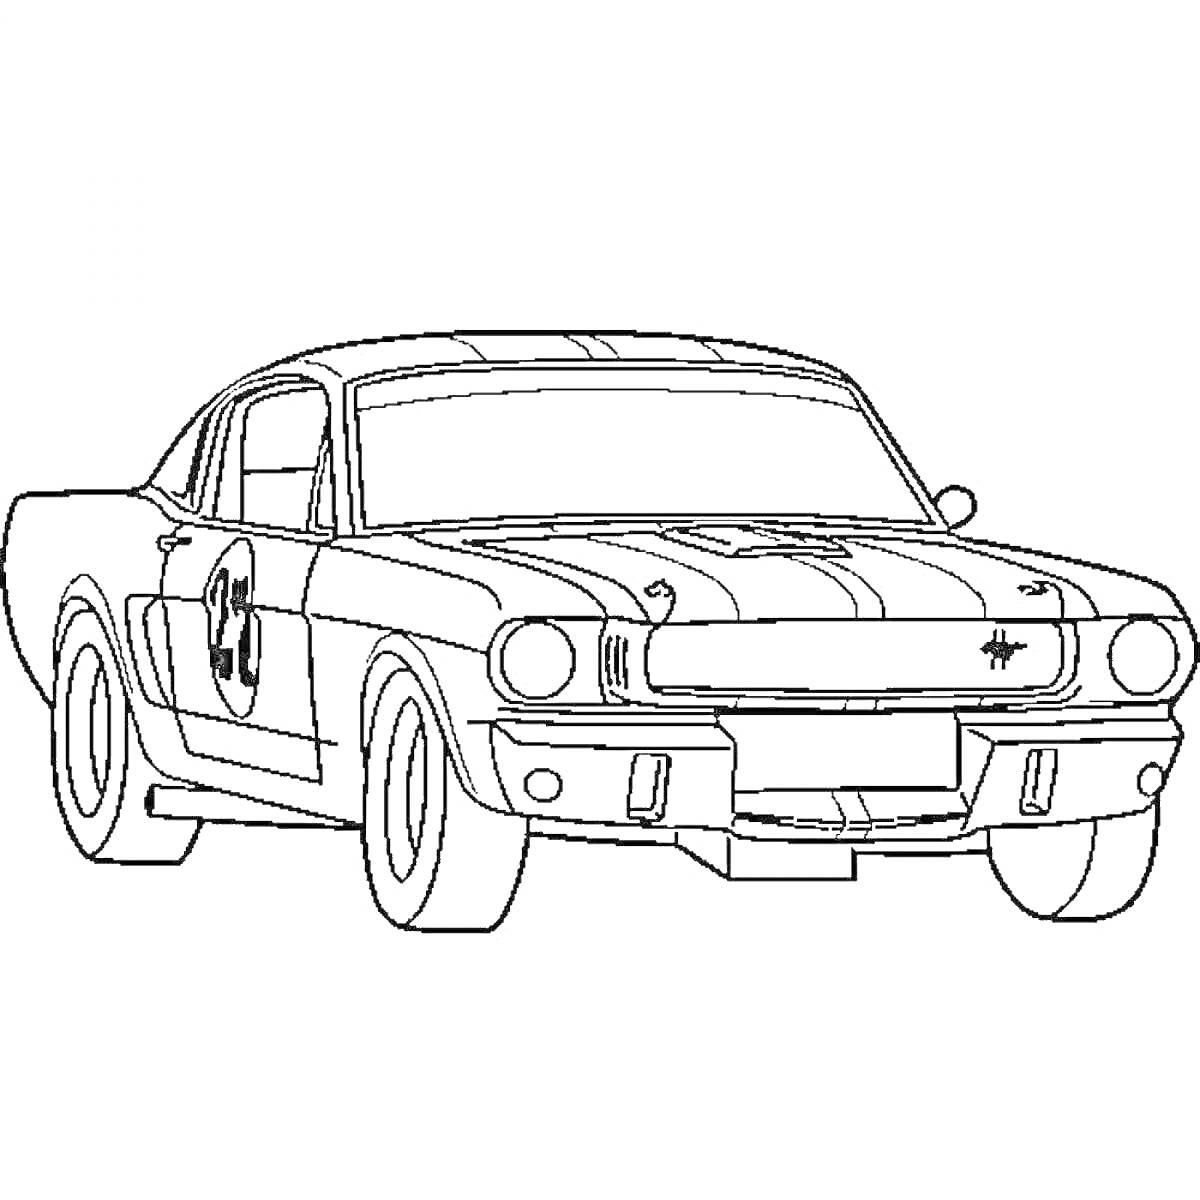 Раскраска Машина со спортивной полосой и номером на двери, Ford Mustang с округлыми колесами